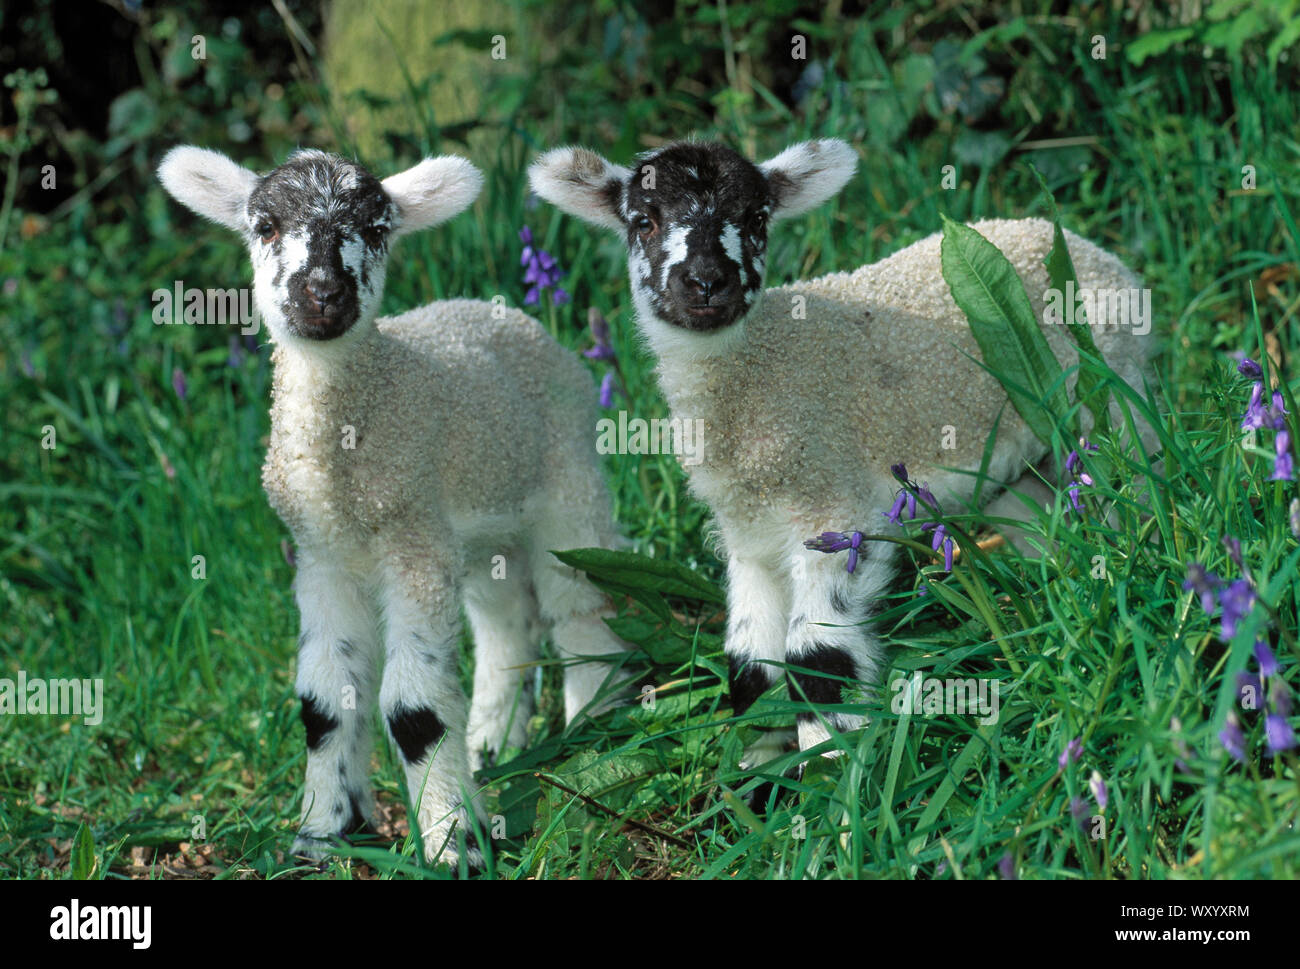 MULE de trois jours des agneaux jumeaux-Bluefaced Leicester x Swaledale cross des moutons. Banque D'Images